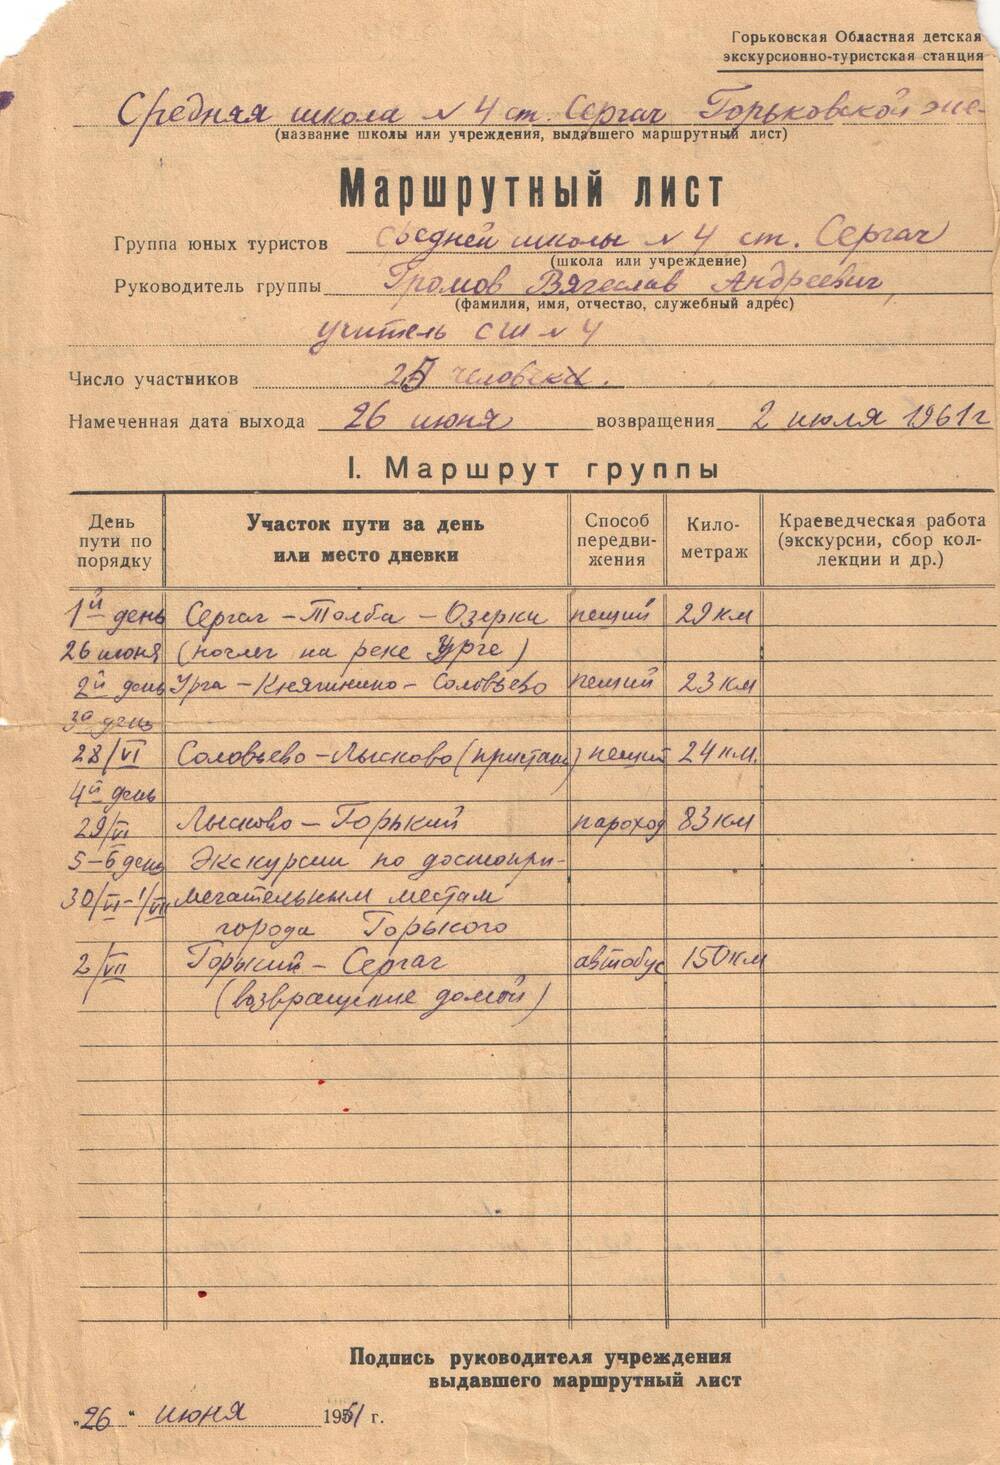 Лист маршрутный  юных туристов школы № 59  станции Сергач 1961 г.